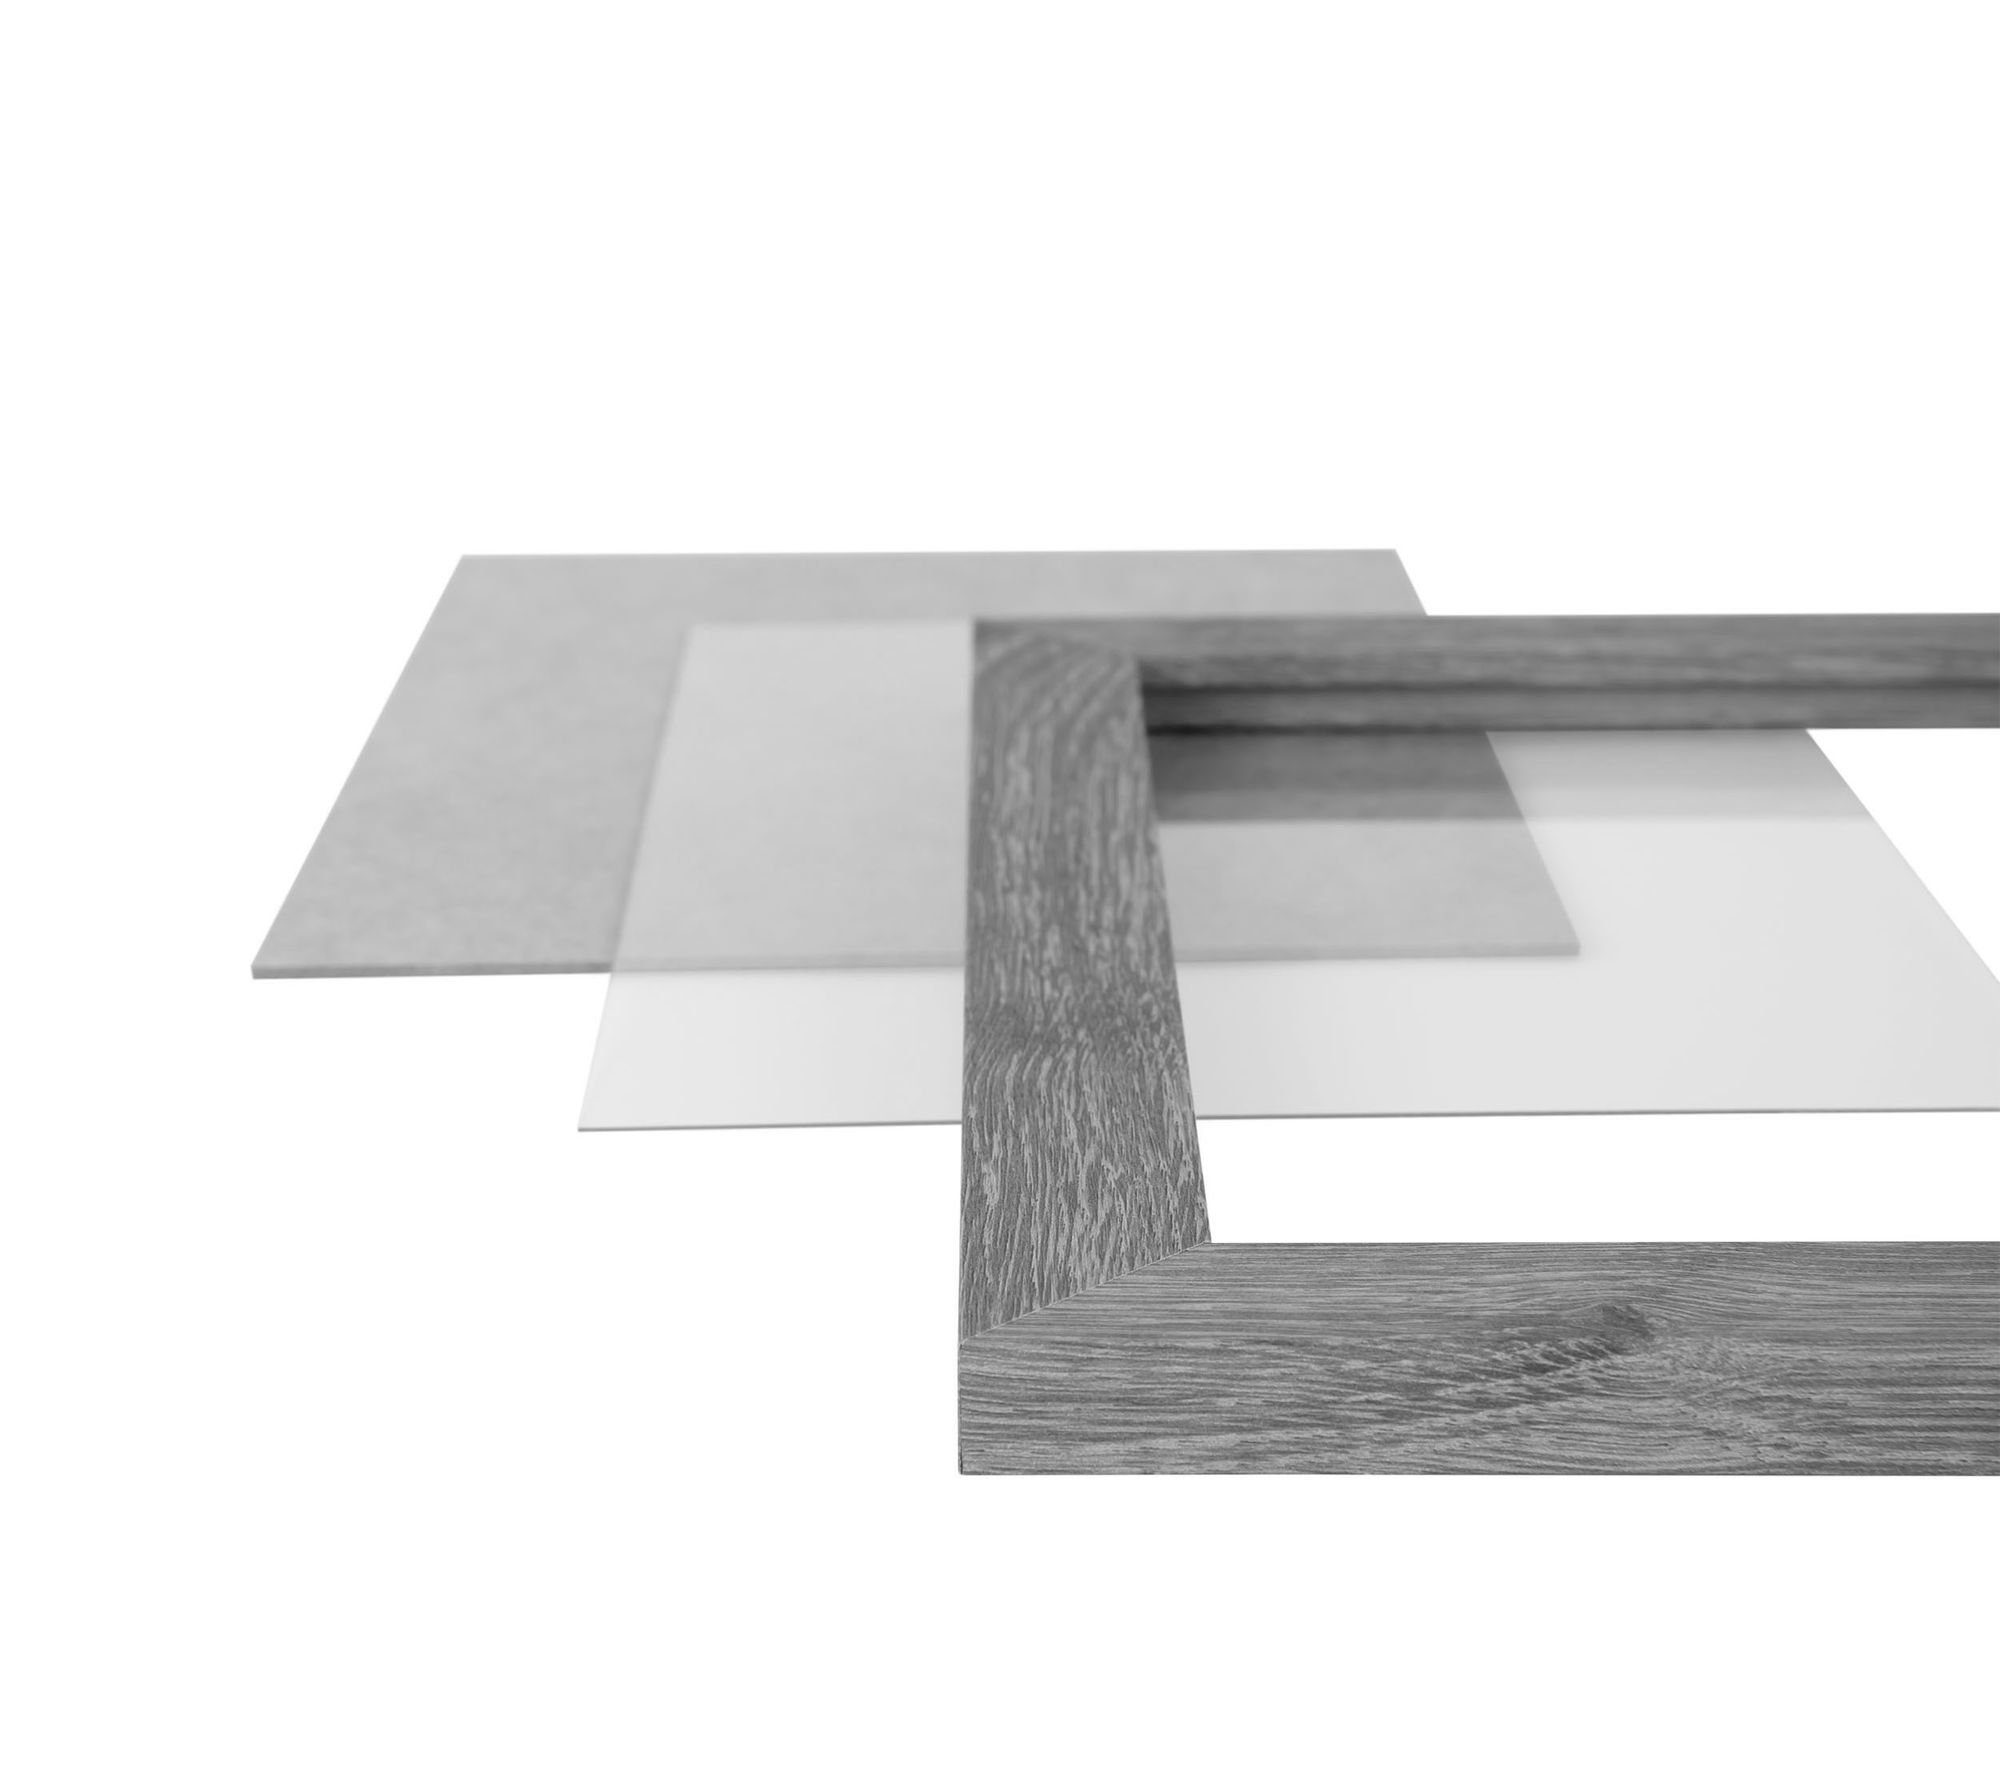 CLAMARO FSC® Bilderrahmen eckiger Holz schwarz Moderner Rahmen handgefertigt matt Acrylglas, Aufhänger Bilderrahmen und Maß 'Collage' nach in Rückwand Clamaro MDF 50x75 inkl.